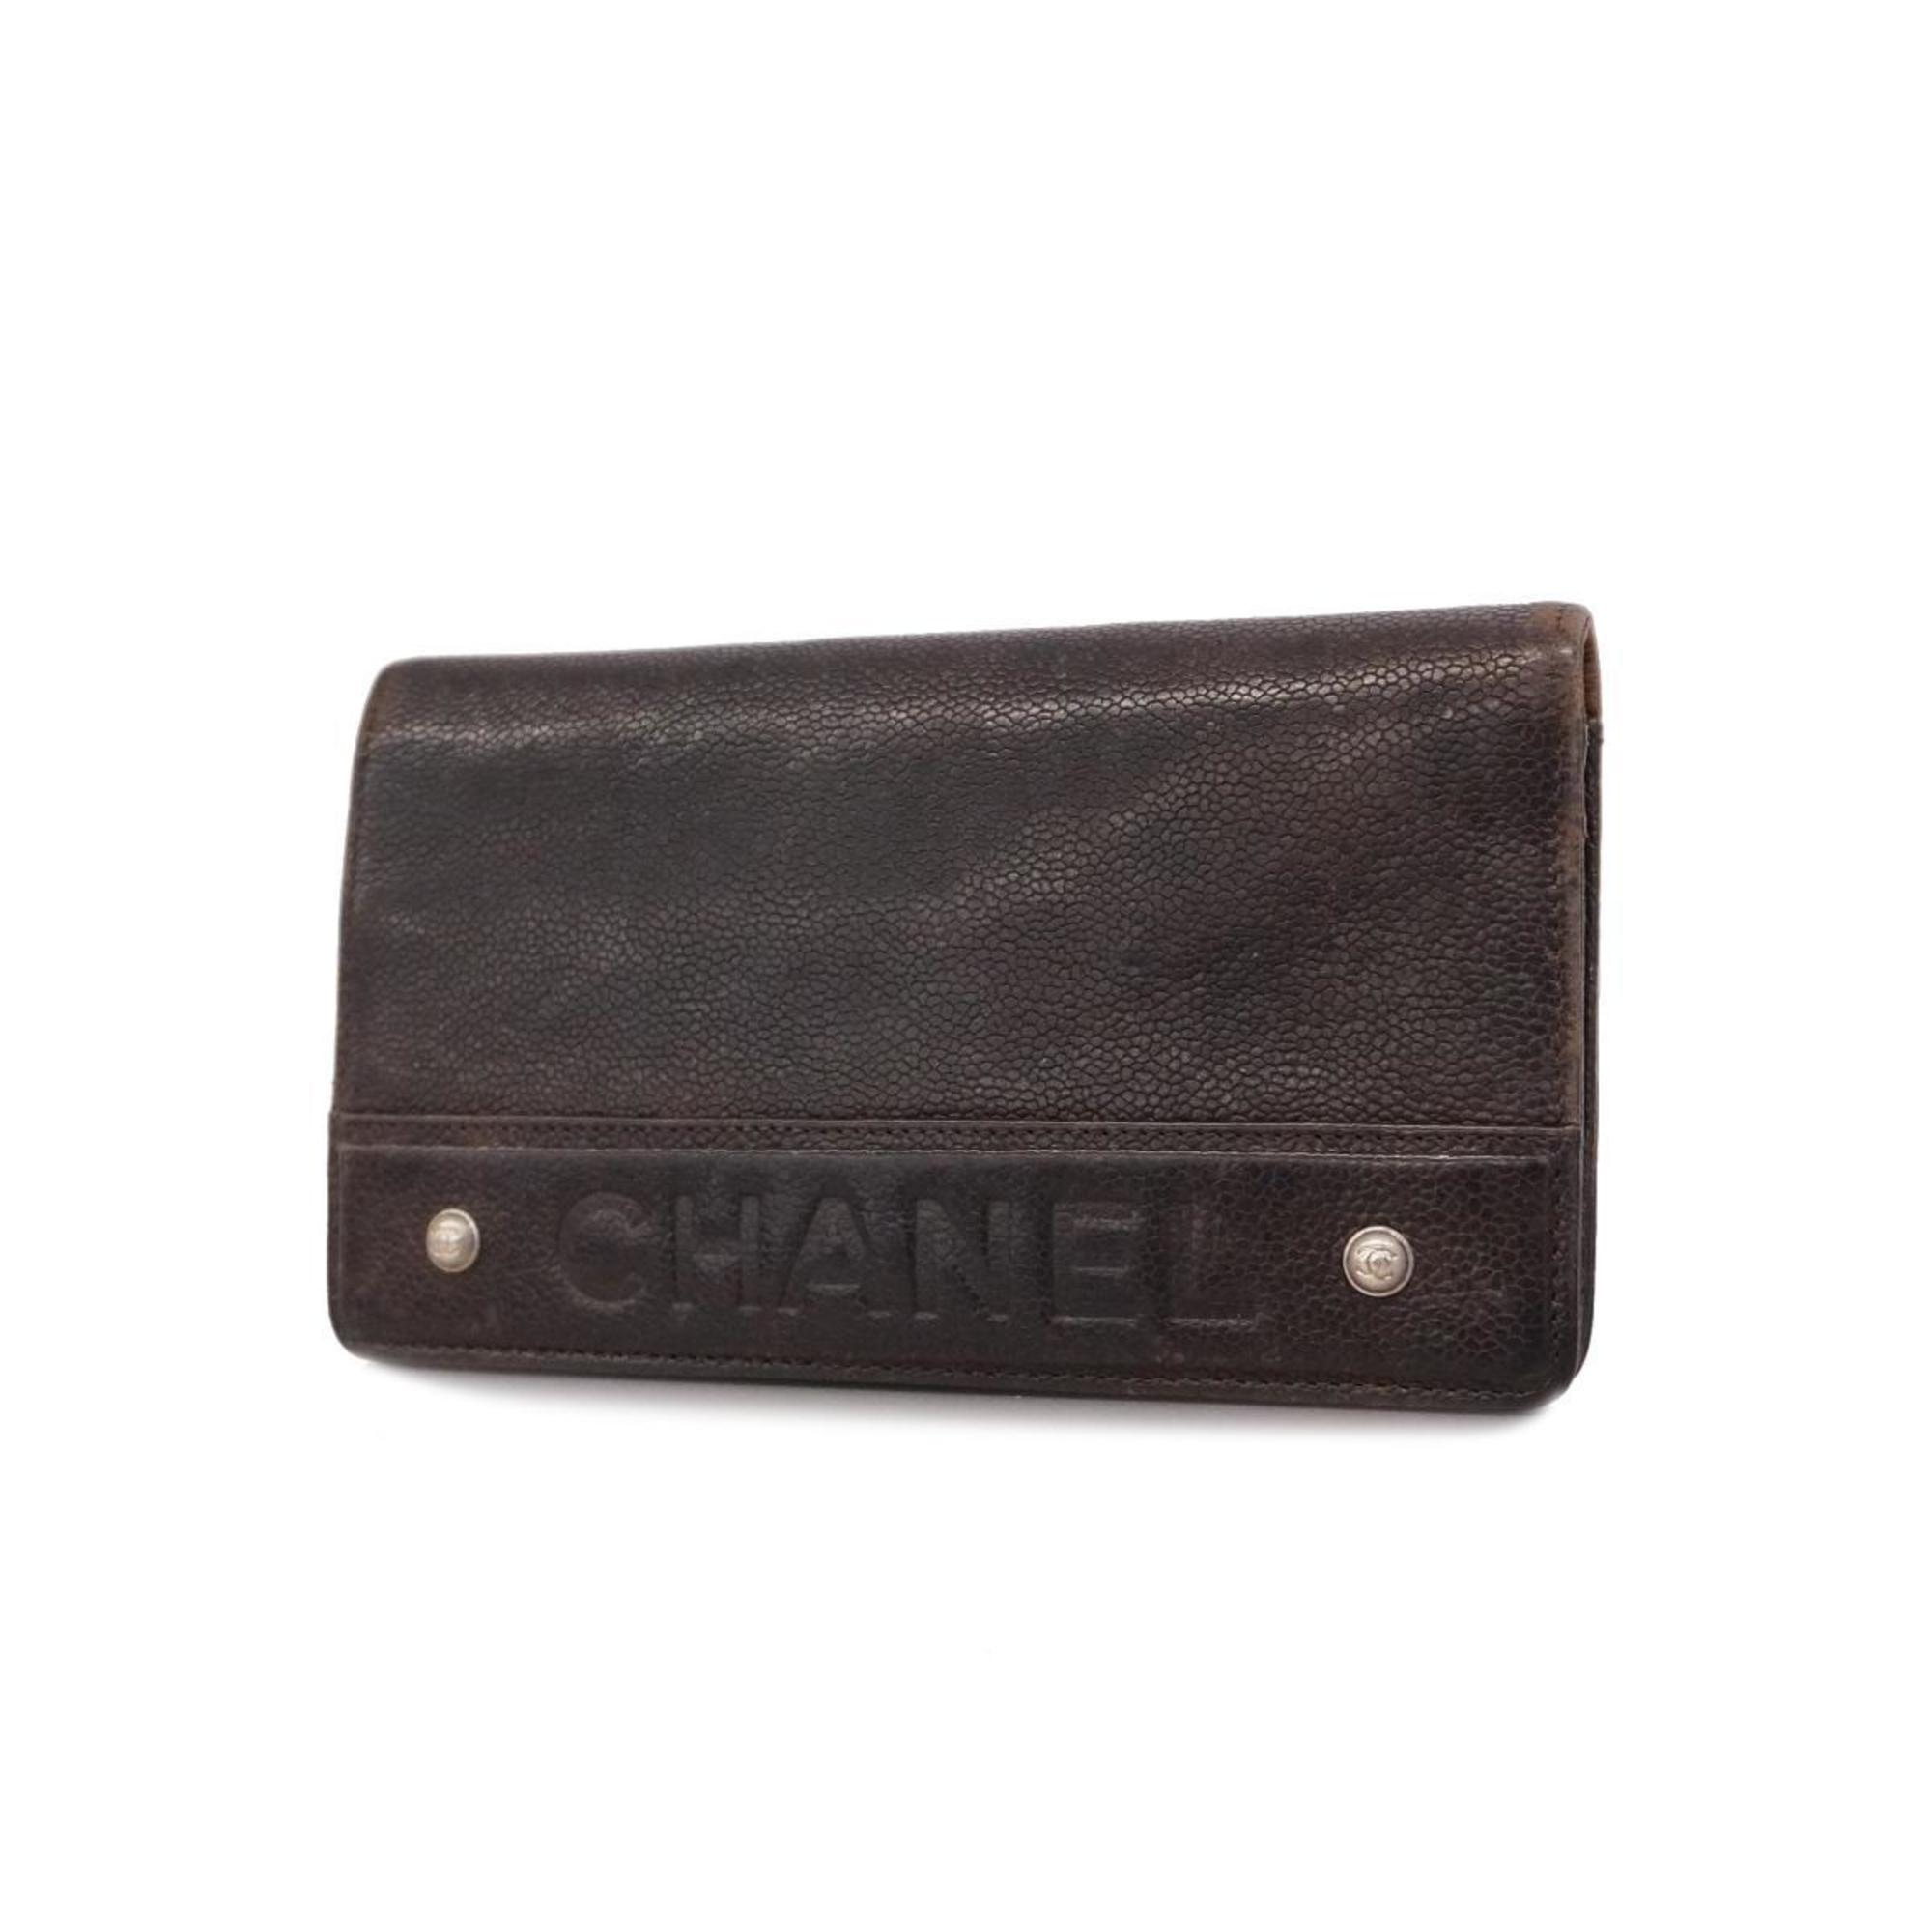 シャネル(Chanel) シャネル 長財布 キャビアスキン ブラウン メンズ 